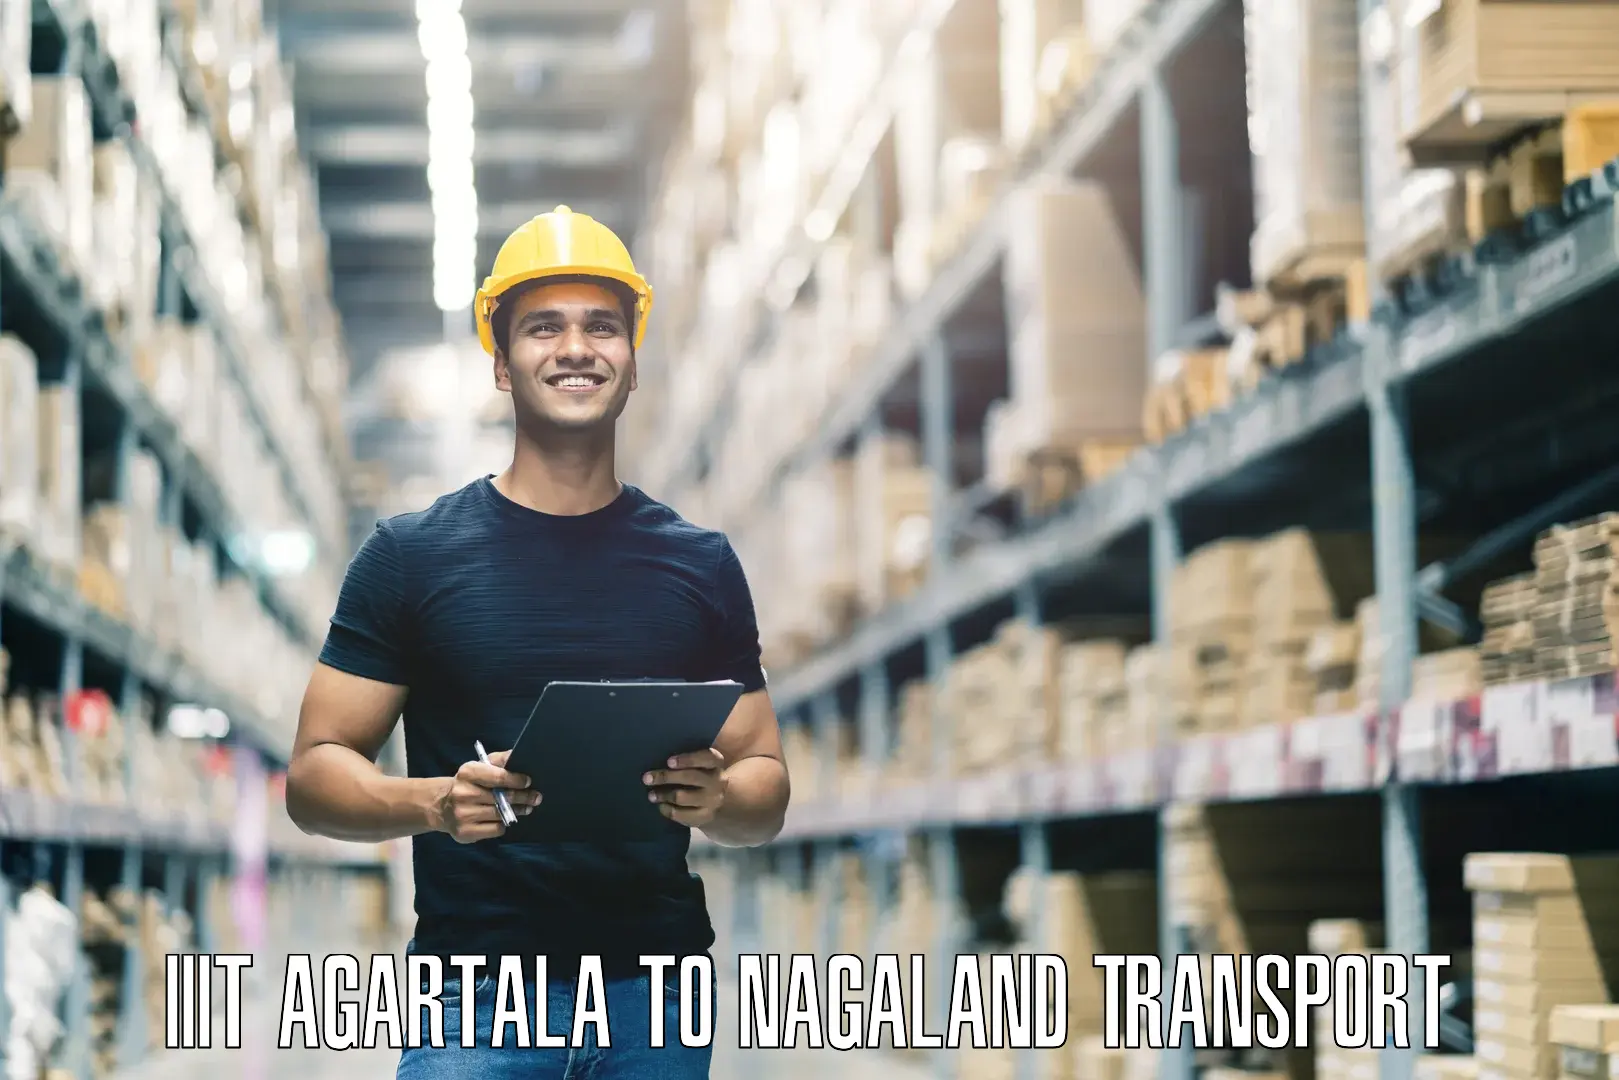 Door to door transport services IIIT Agartala to Nagaland